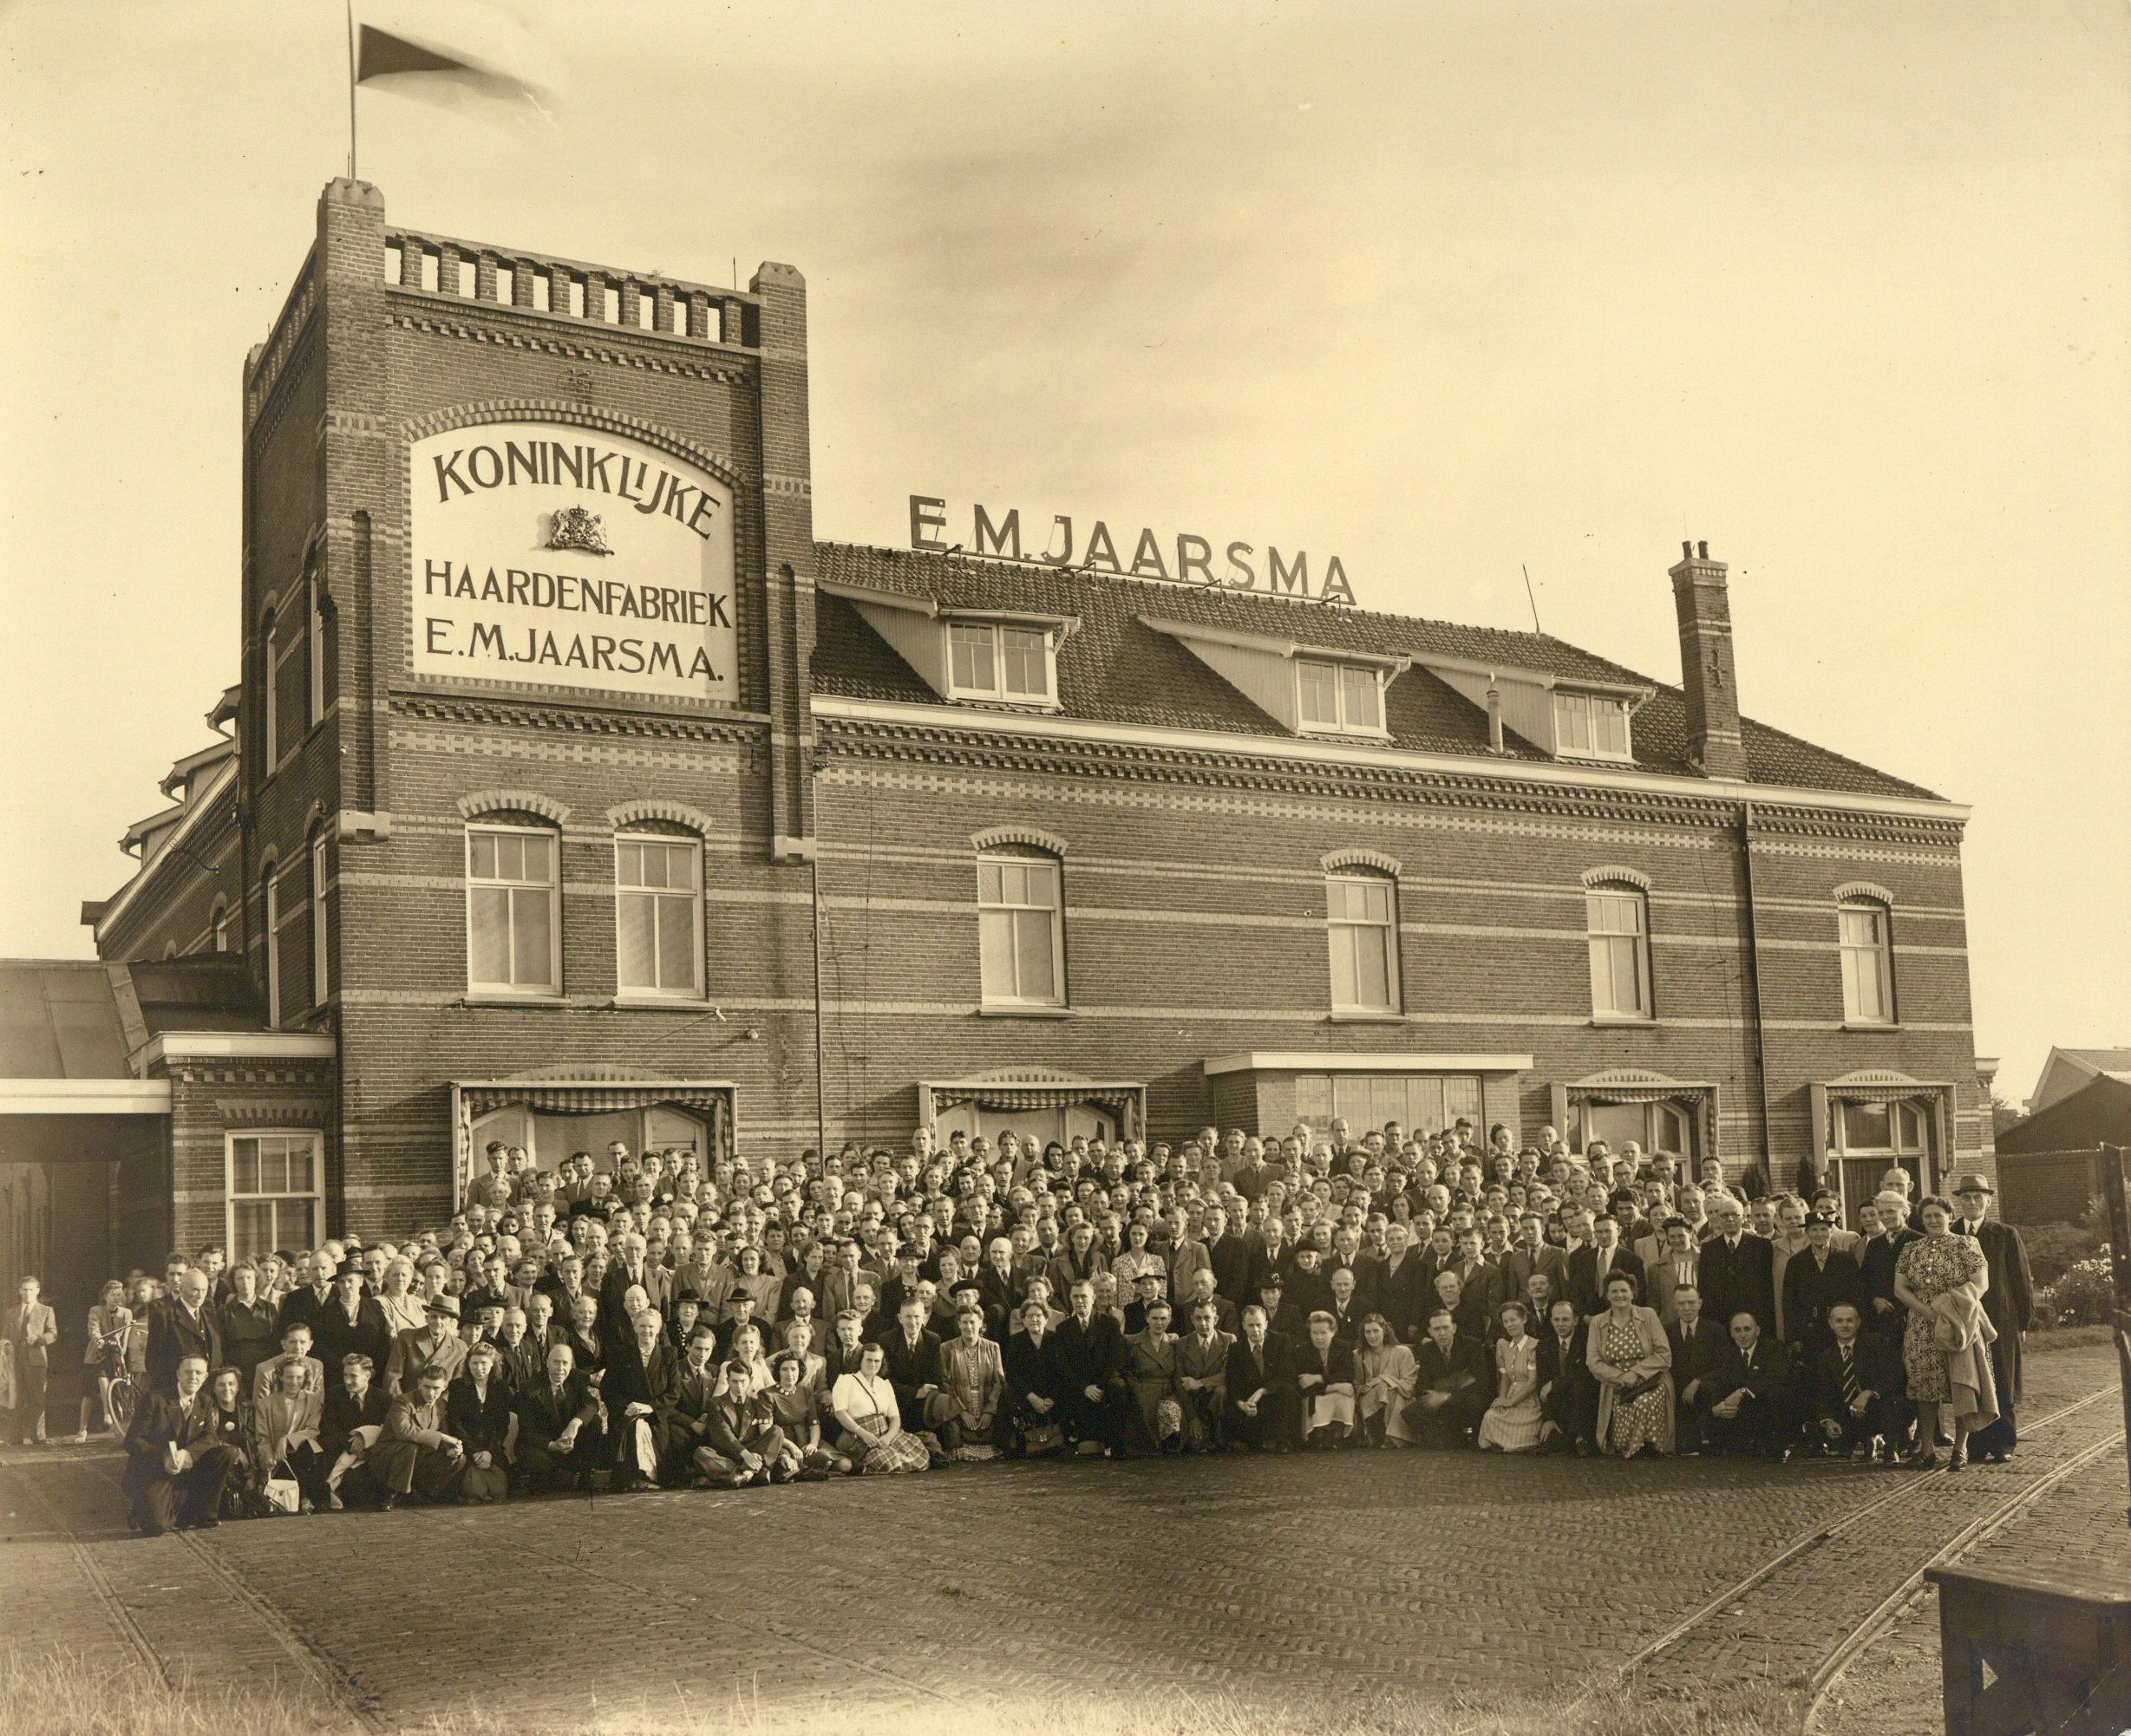 De toonkamer van de fabriek in Hilversum in 1960. Bron: Gooienvechthistorisch.nl.